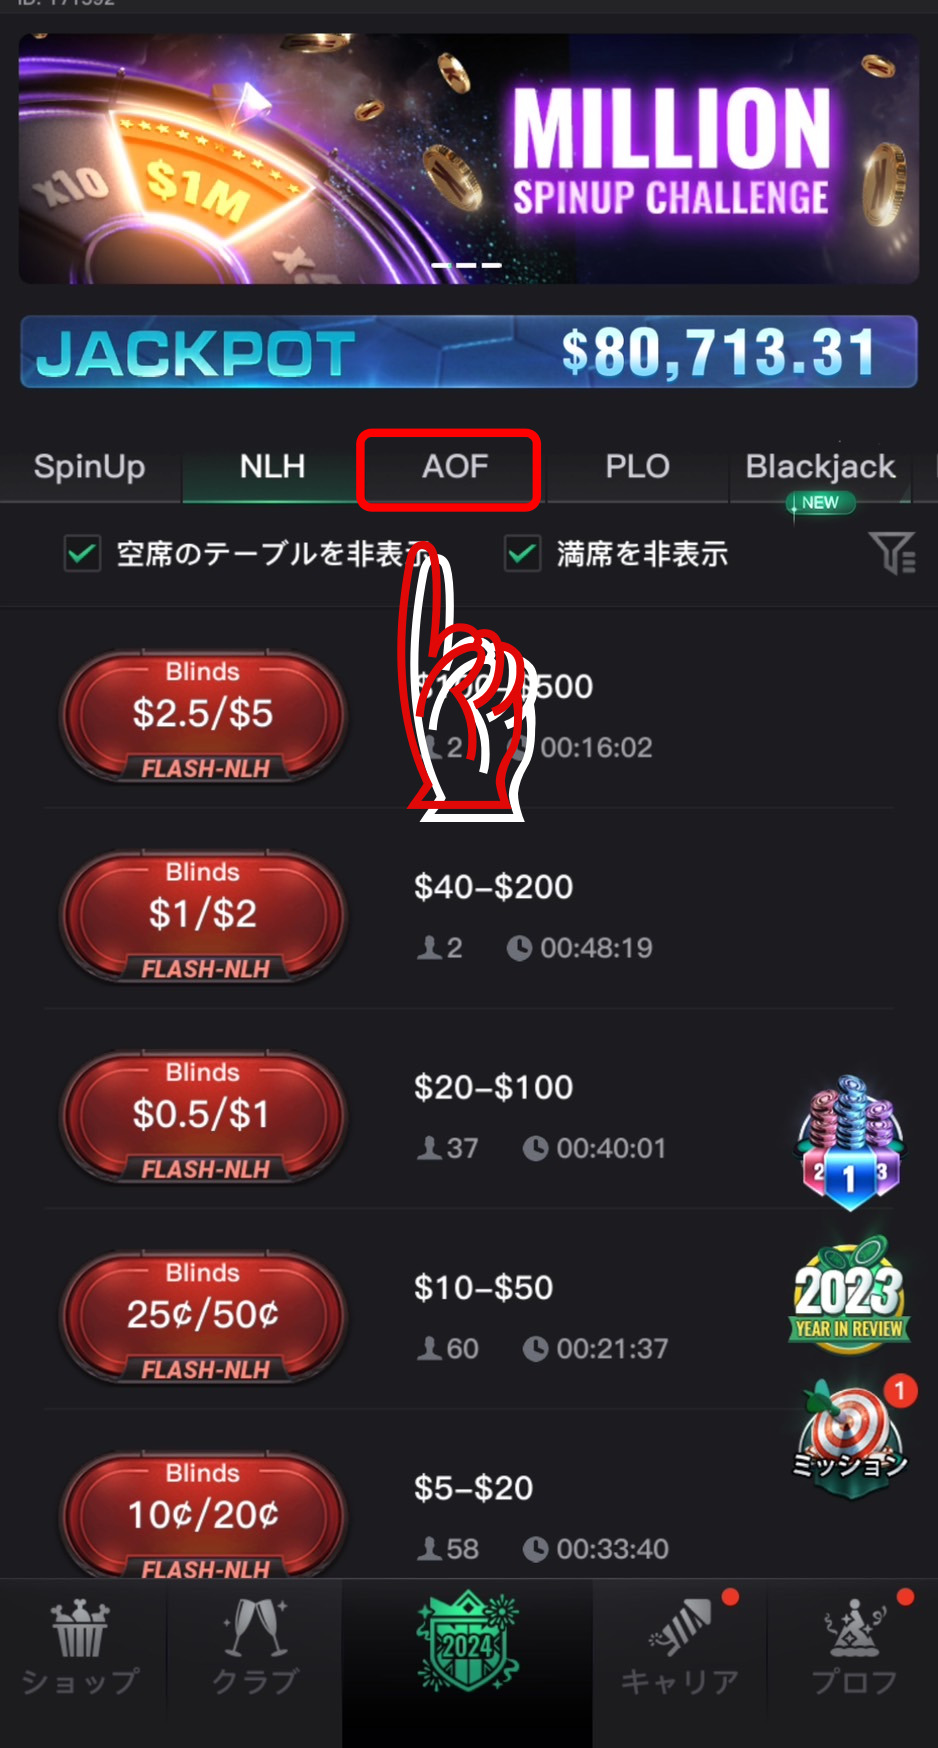 KKPokerのアプリから「AOF」を選択